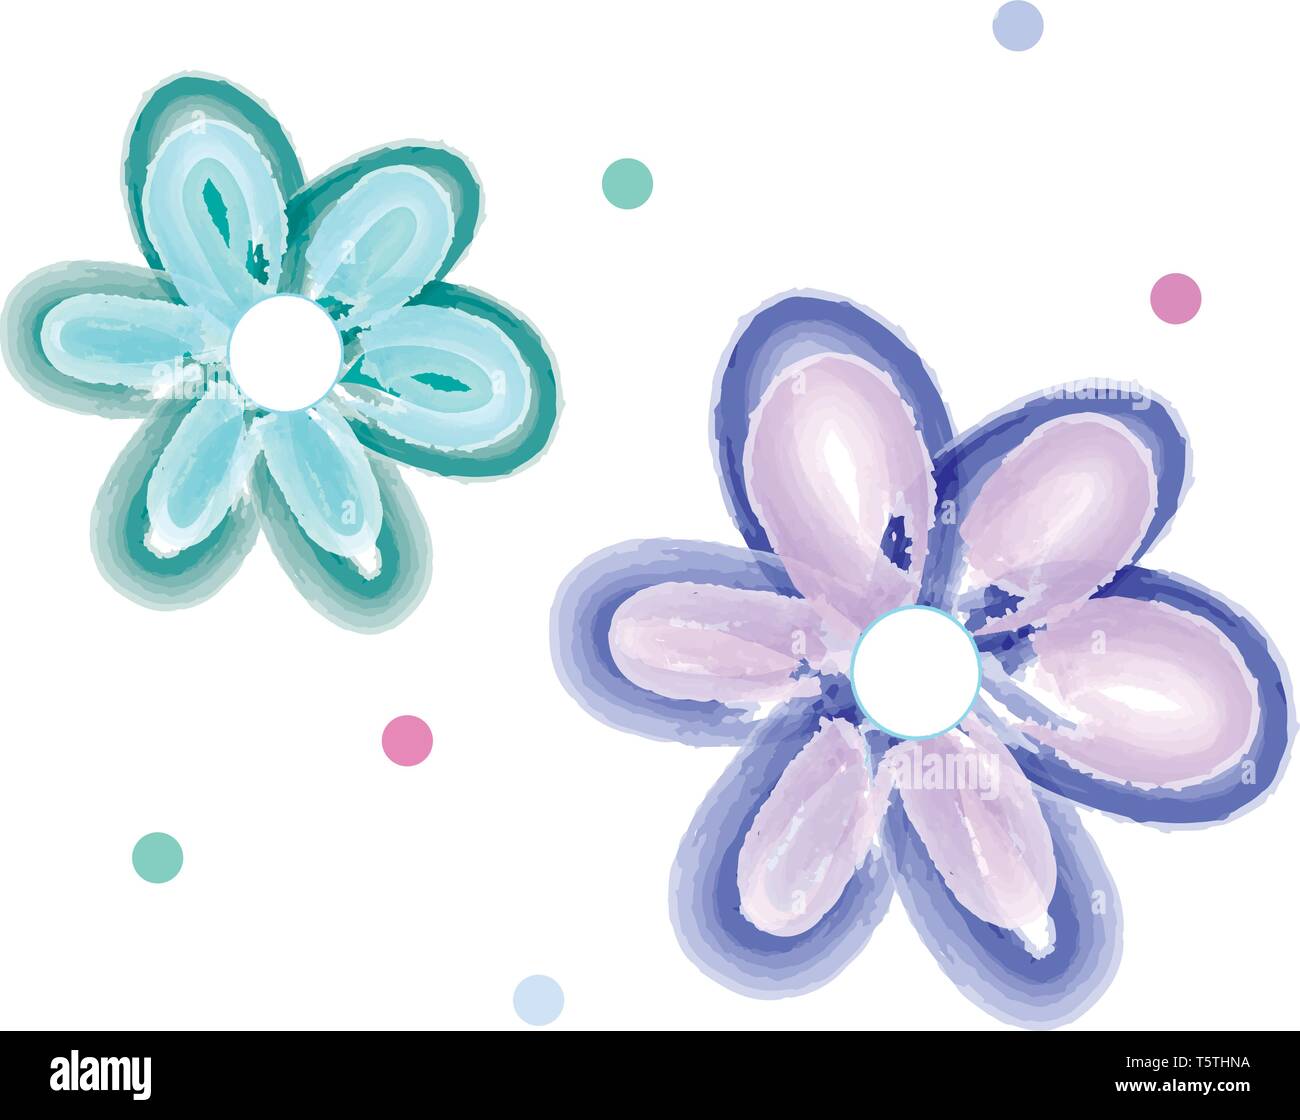 Zwei 5 blättrige Blüten das blau-grüne Farbe der Zeichnung oder Illustration Vektor Stock Vektor